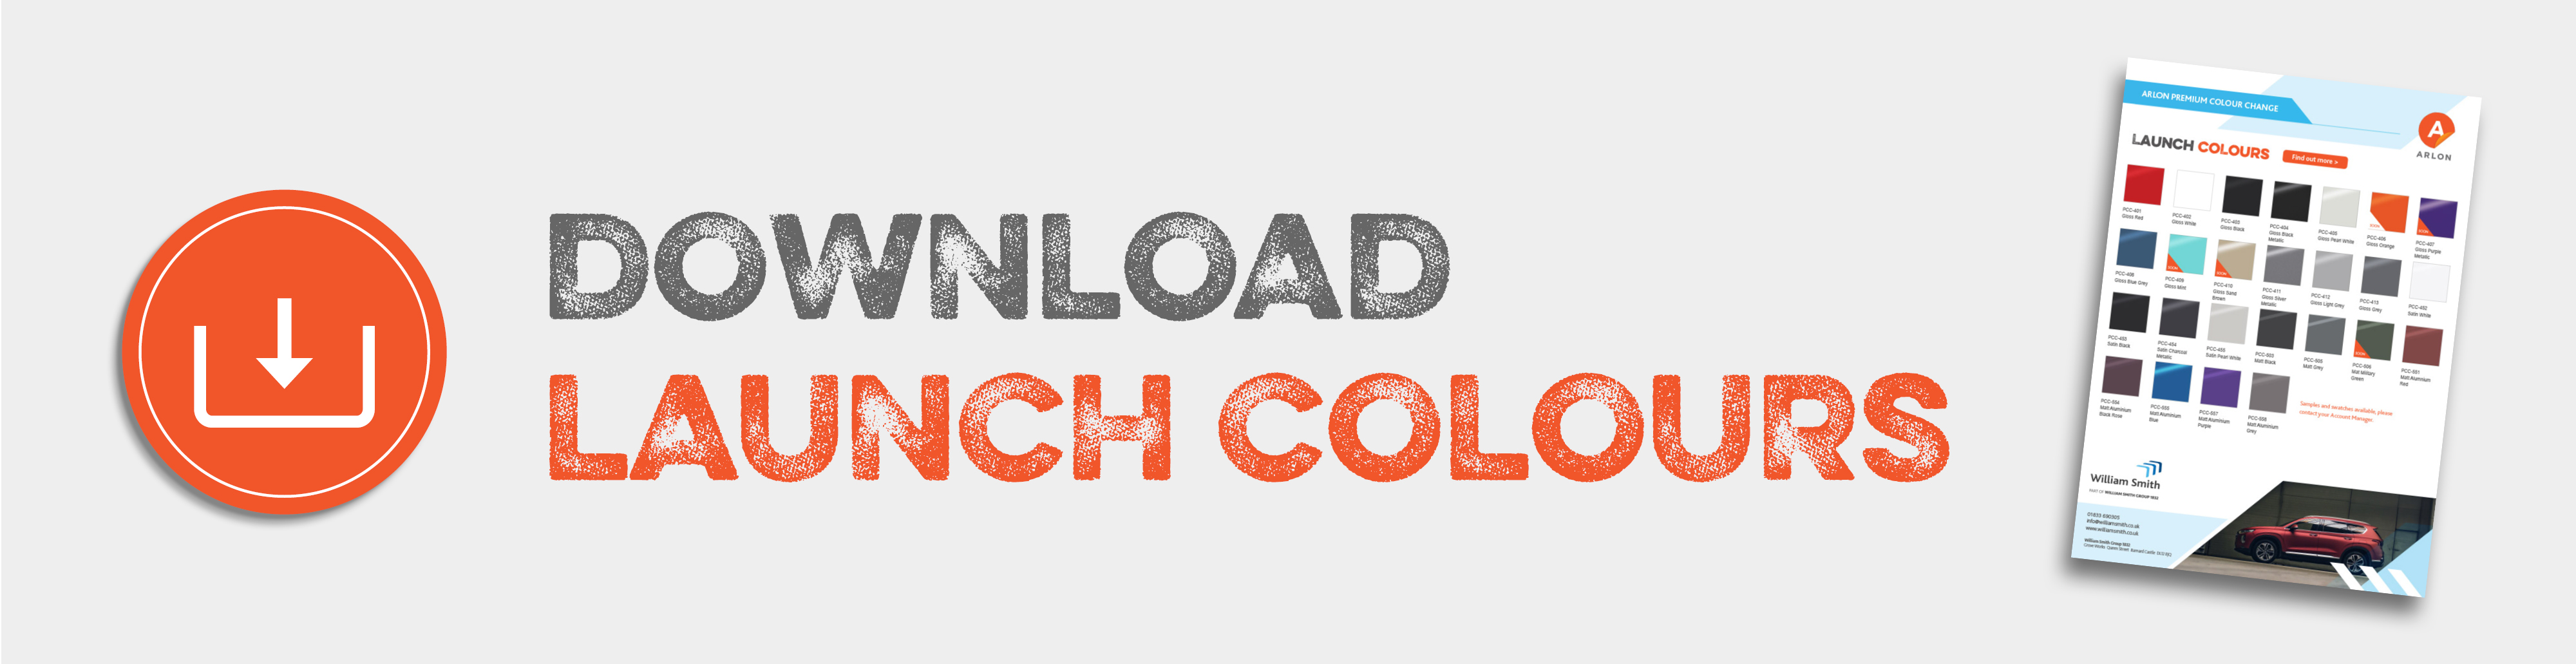 download launch colours